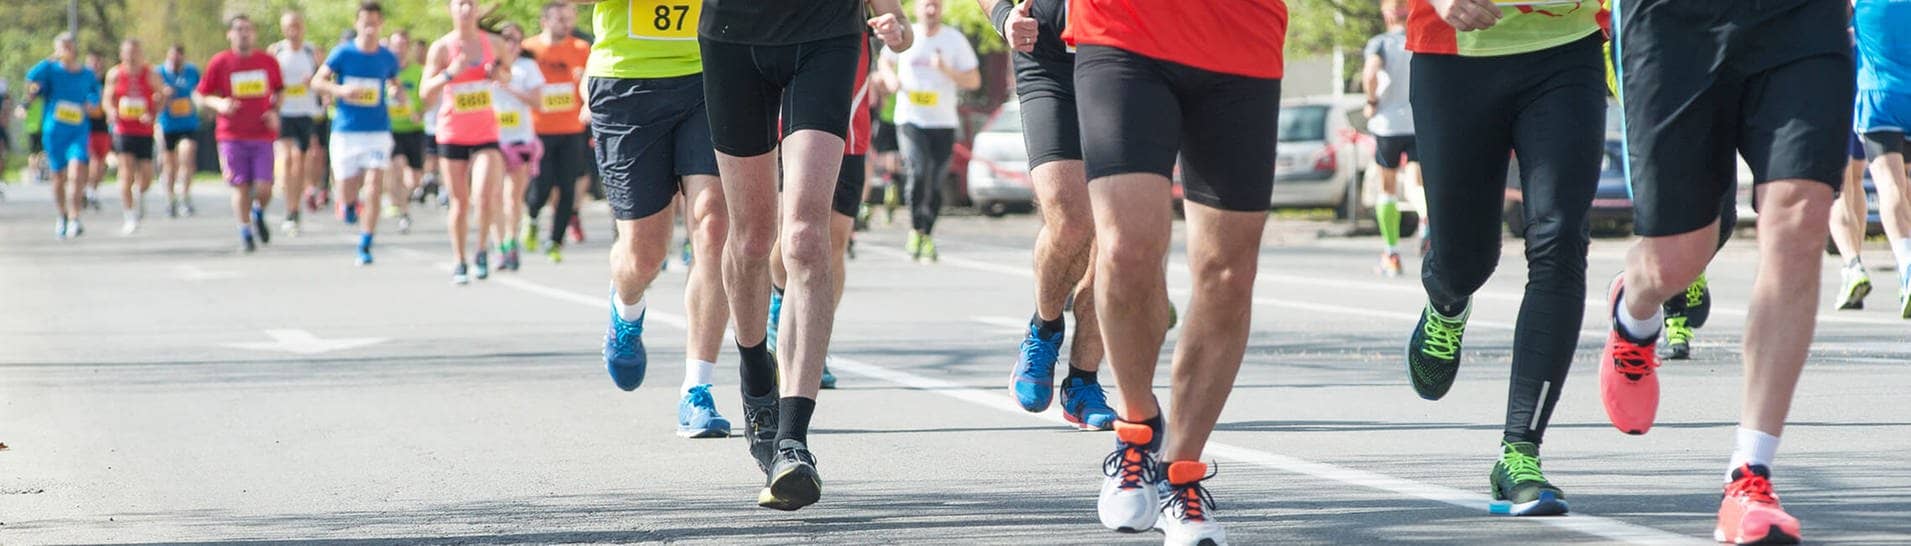 Marathon-Läufer laufen über 42 Kilometer (Foto: Adobe Stock / kroko021)